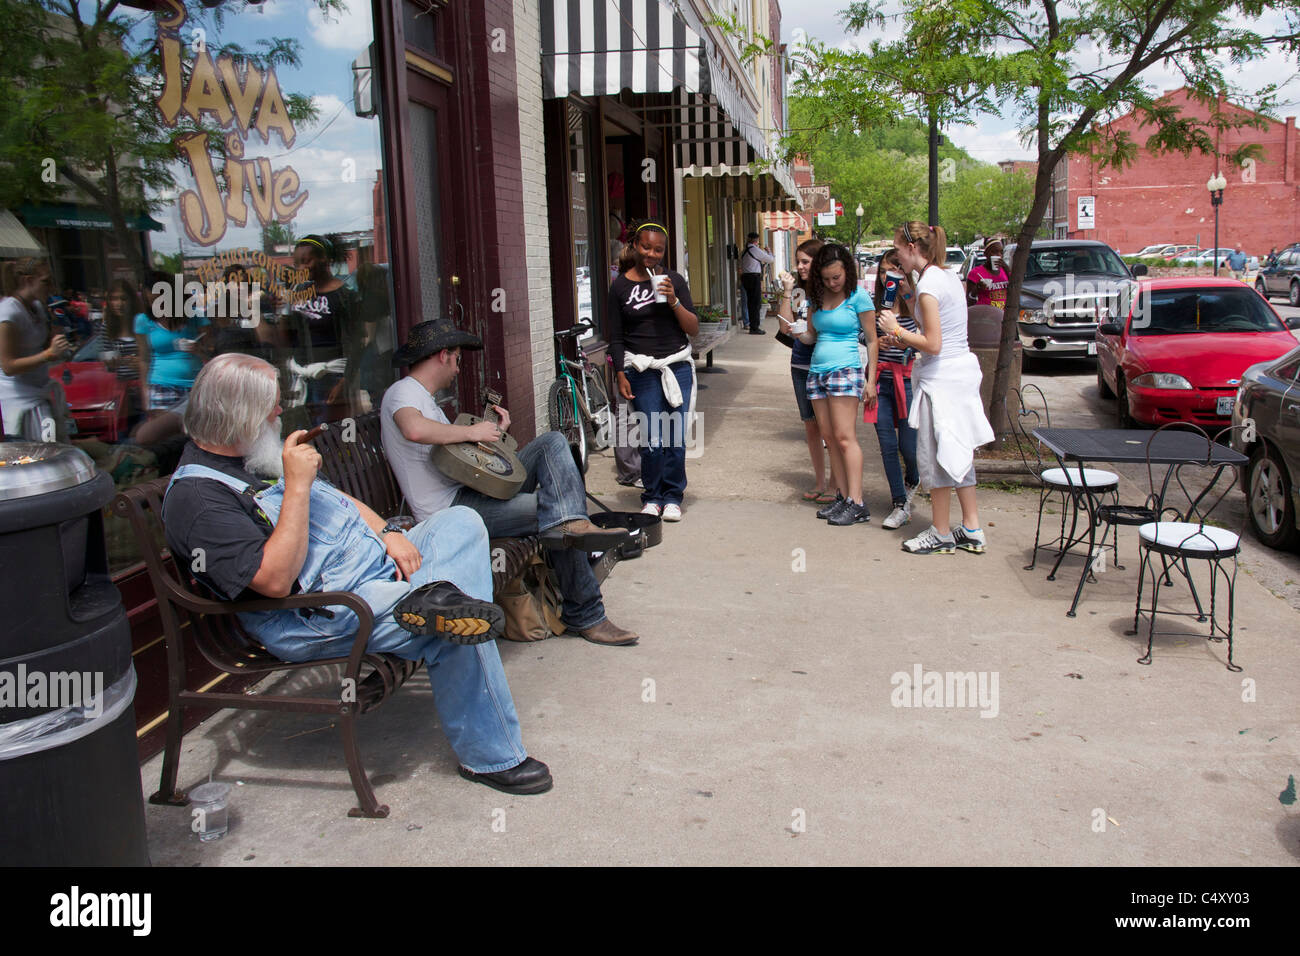 Scene on Main Street. Hannibal, Missouri. Stock Photo